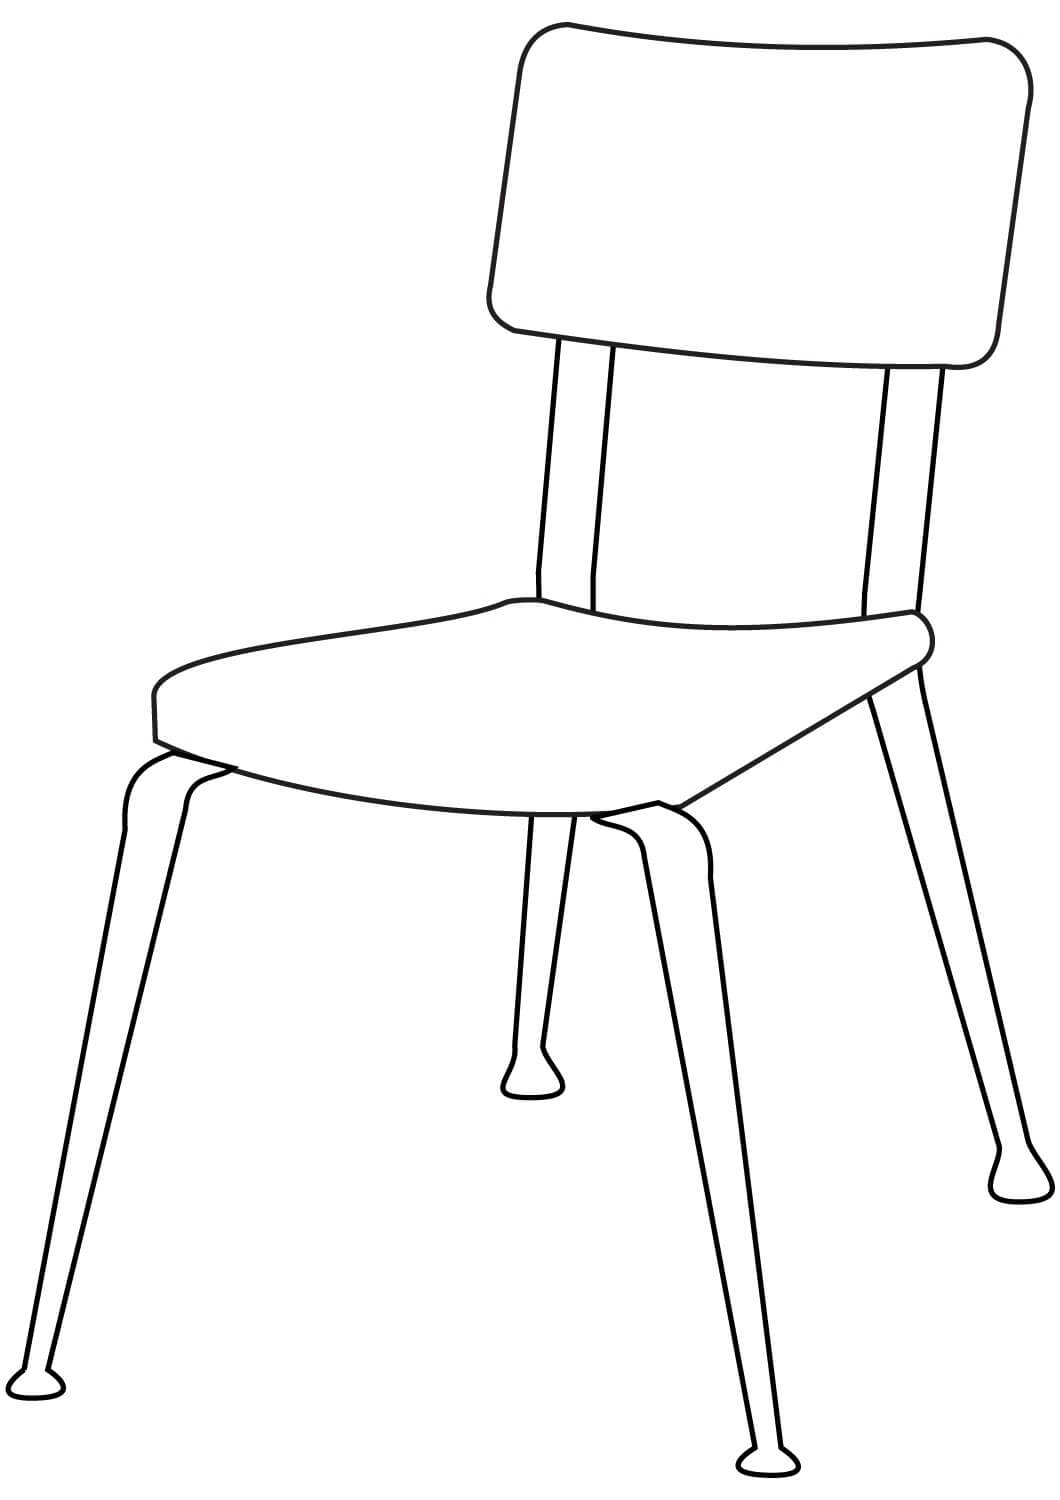 간단한 의자